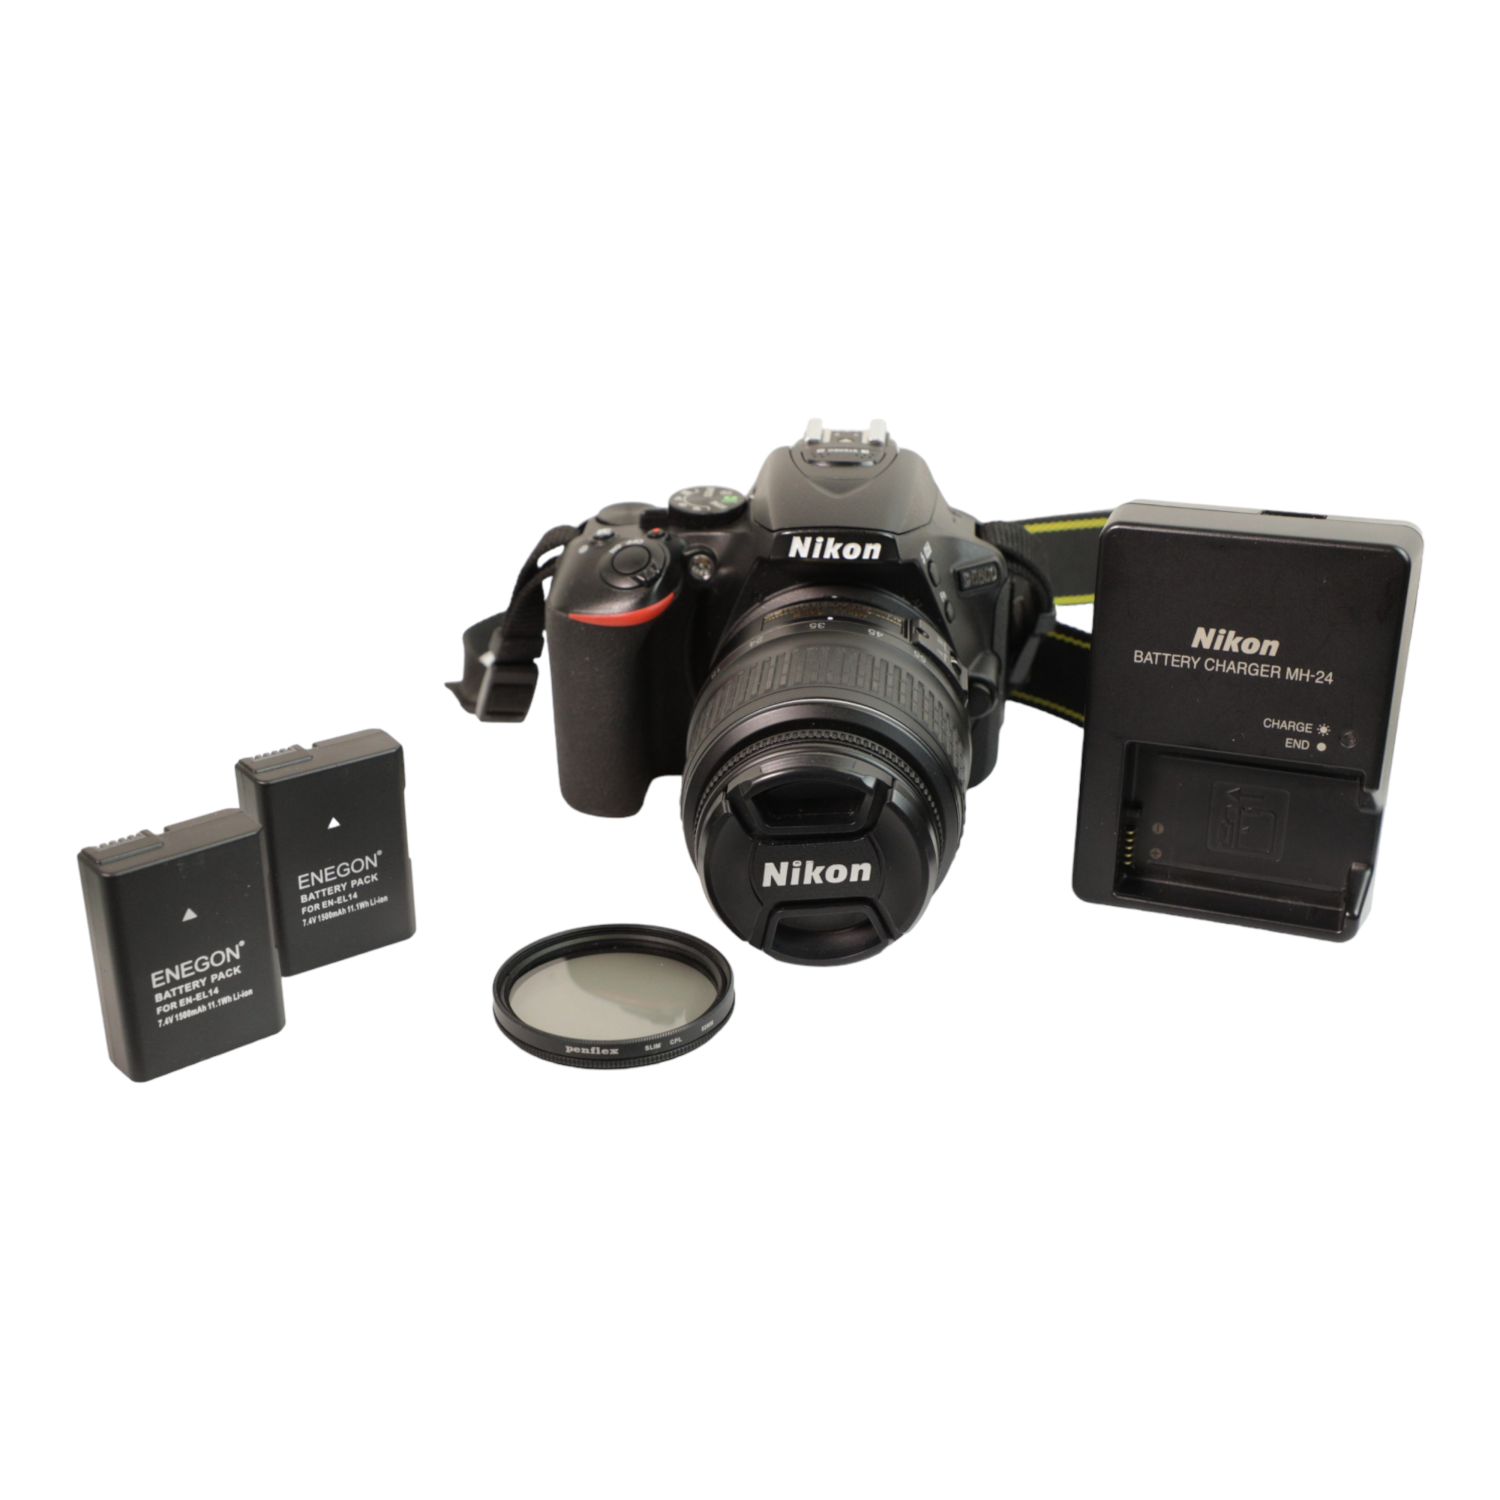 Refurbished (Good) - Nikon D5600 DSLR Camera with 18-55mm f/3.5-5.6G II Lens